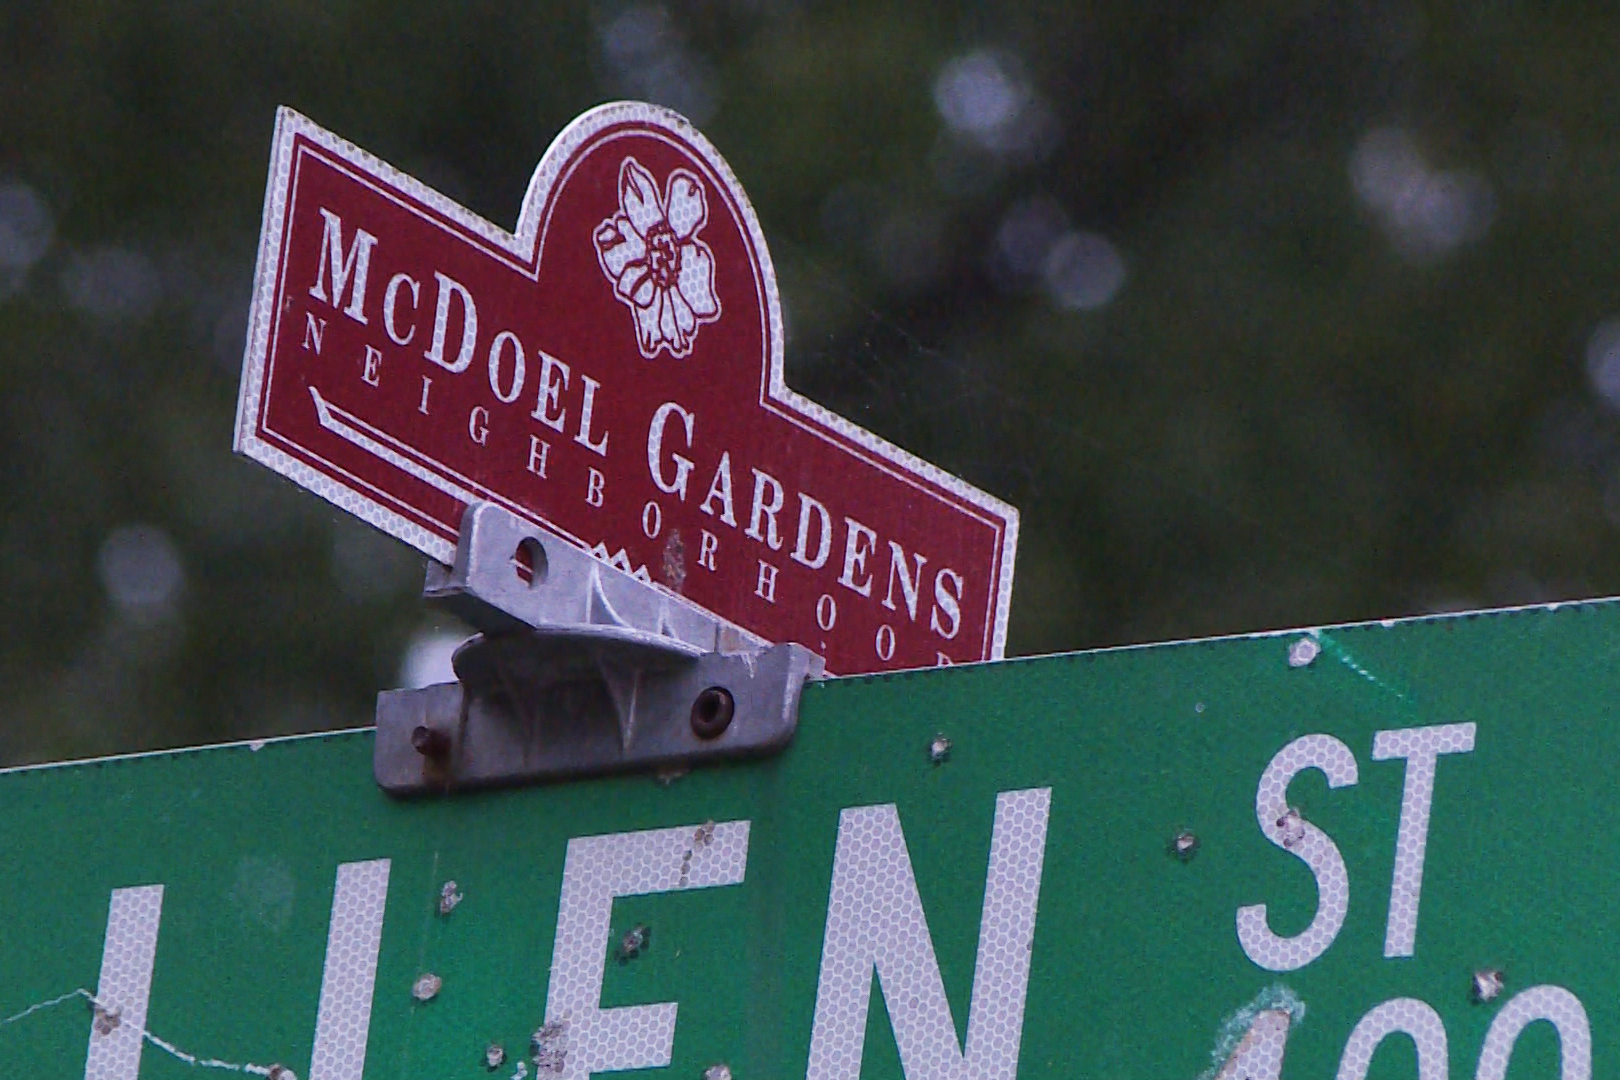 McDoel Gardens sign